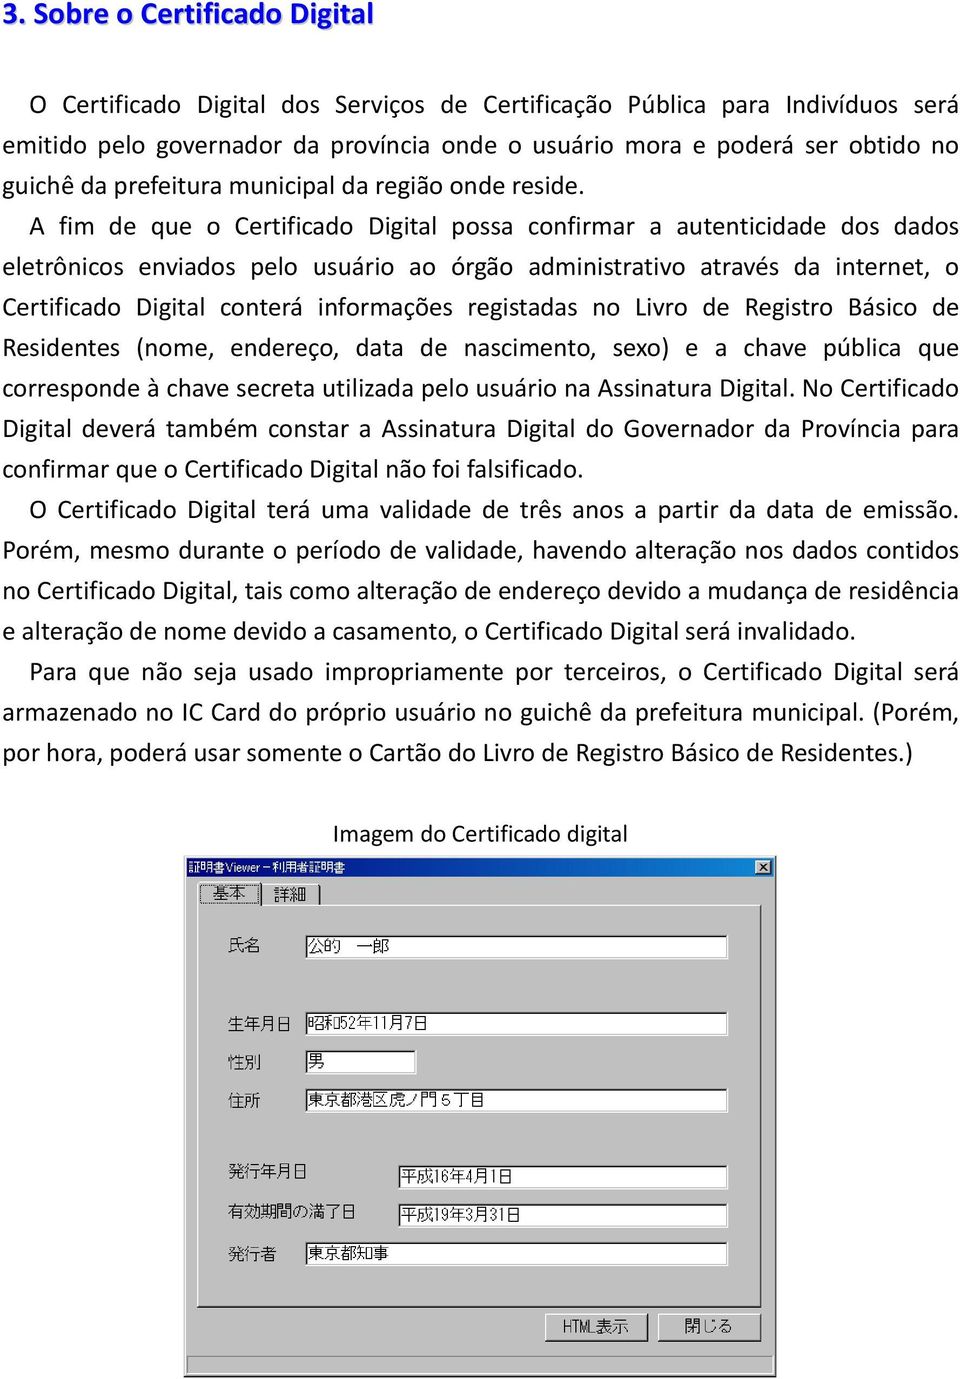 A fim de que o Certificado Digital possa confirmar a autenticidade dos dados eletrônicos enviados pelo usuário ao órgão administrativo através da internet, o Certificado Digital conterá informações